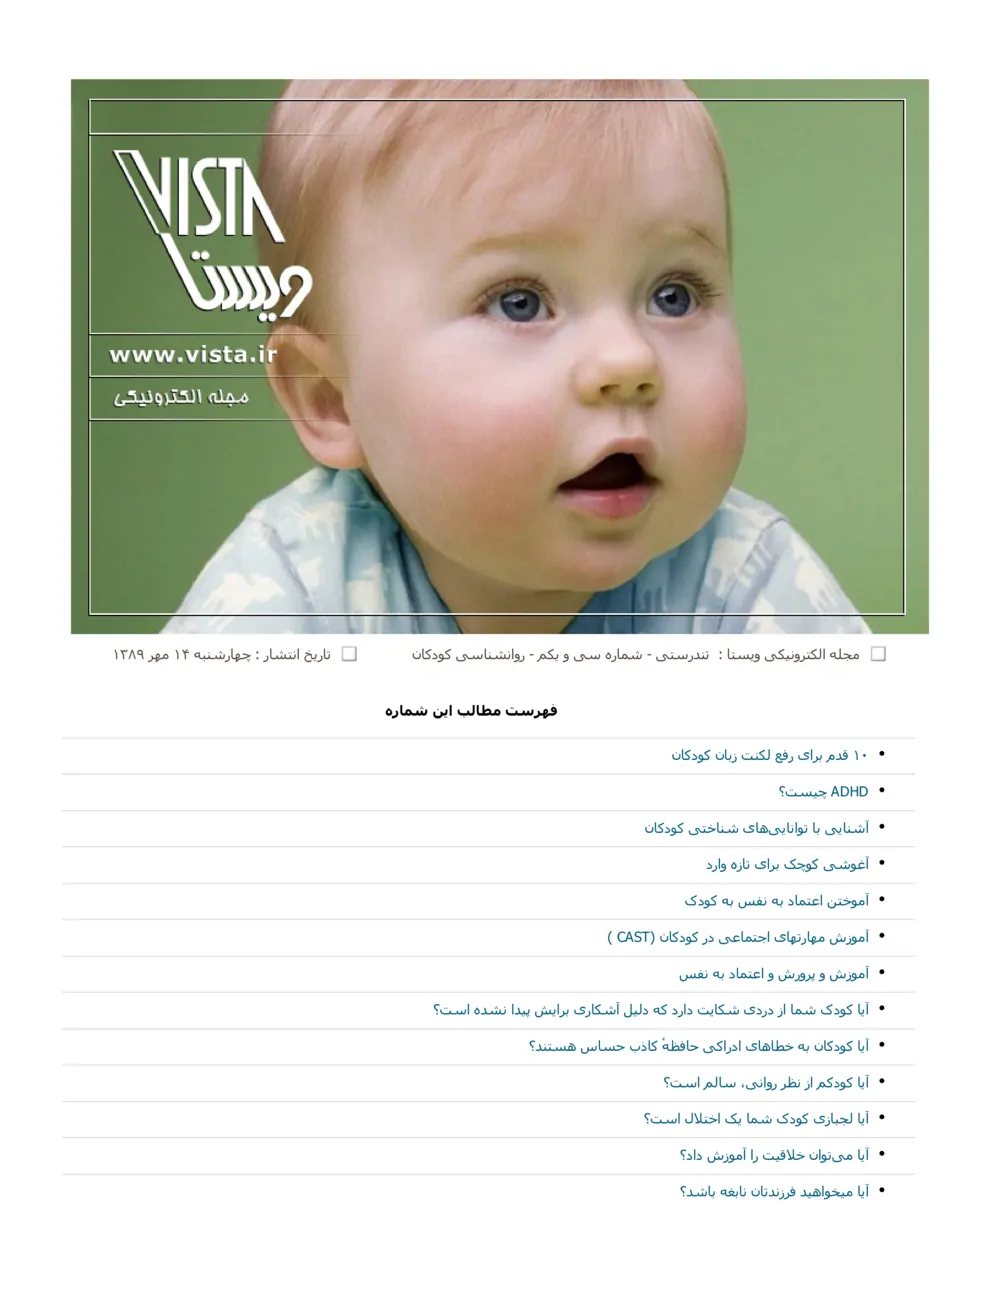 ویستا - تندرستی، شماره 31 - روانشناسی کودکان